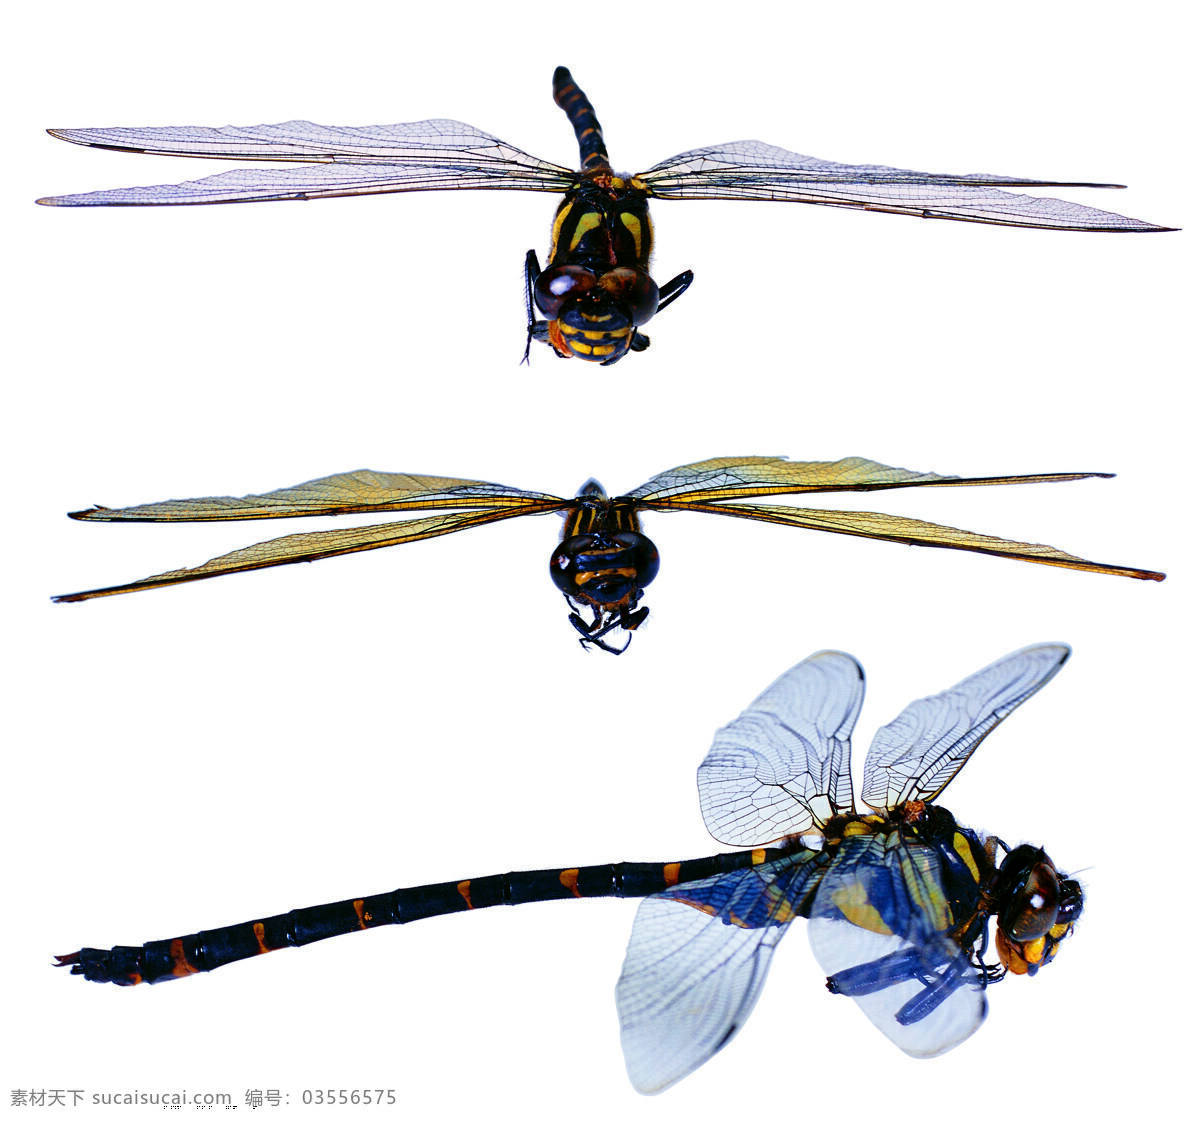 蜻蜓 飞翔 昆虫 生物世界 蜻蜓标本 蜻蜓翅膀 生物科学 psd源文件